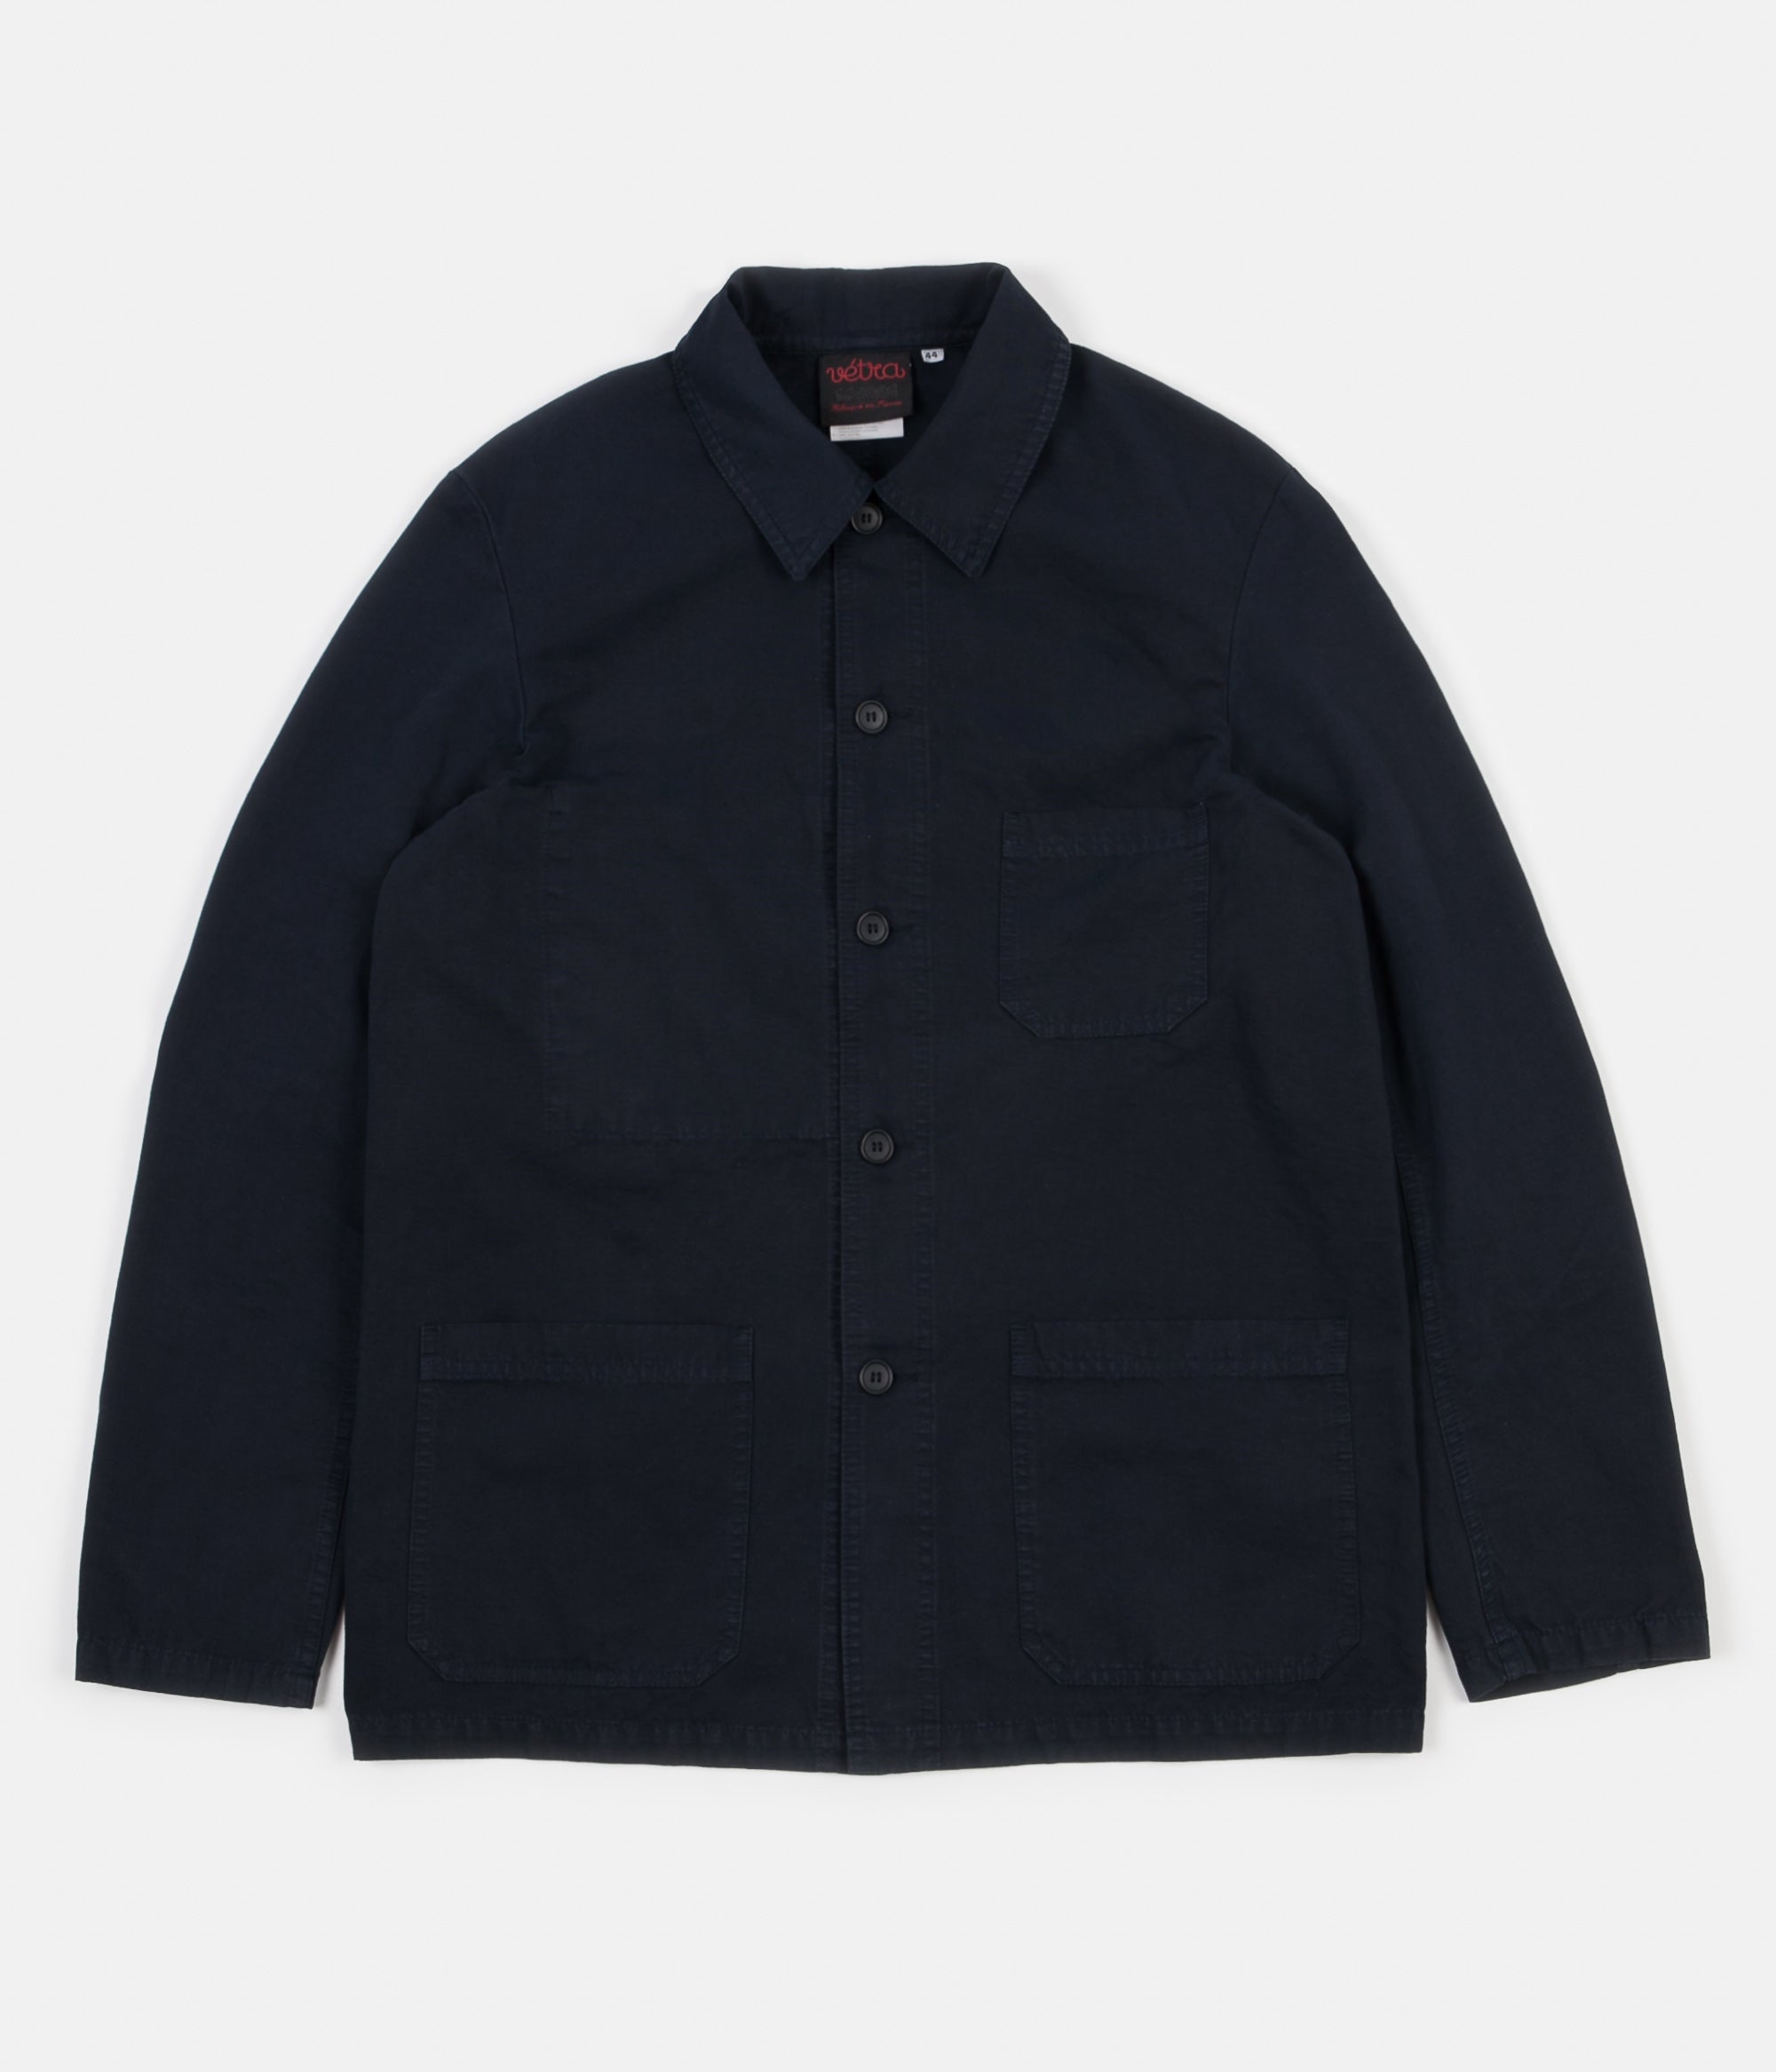 Vetra 5C Short Workwear Jacket - Navy | Flatspot